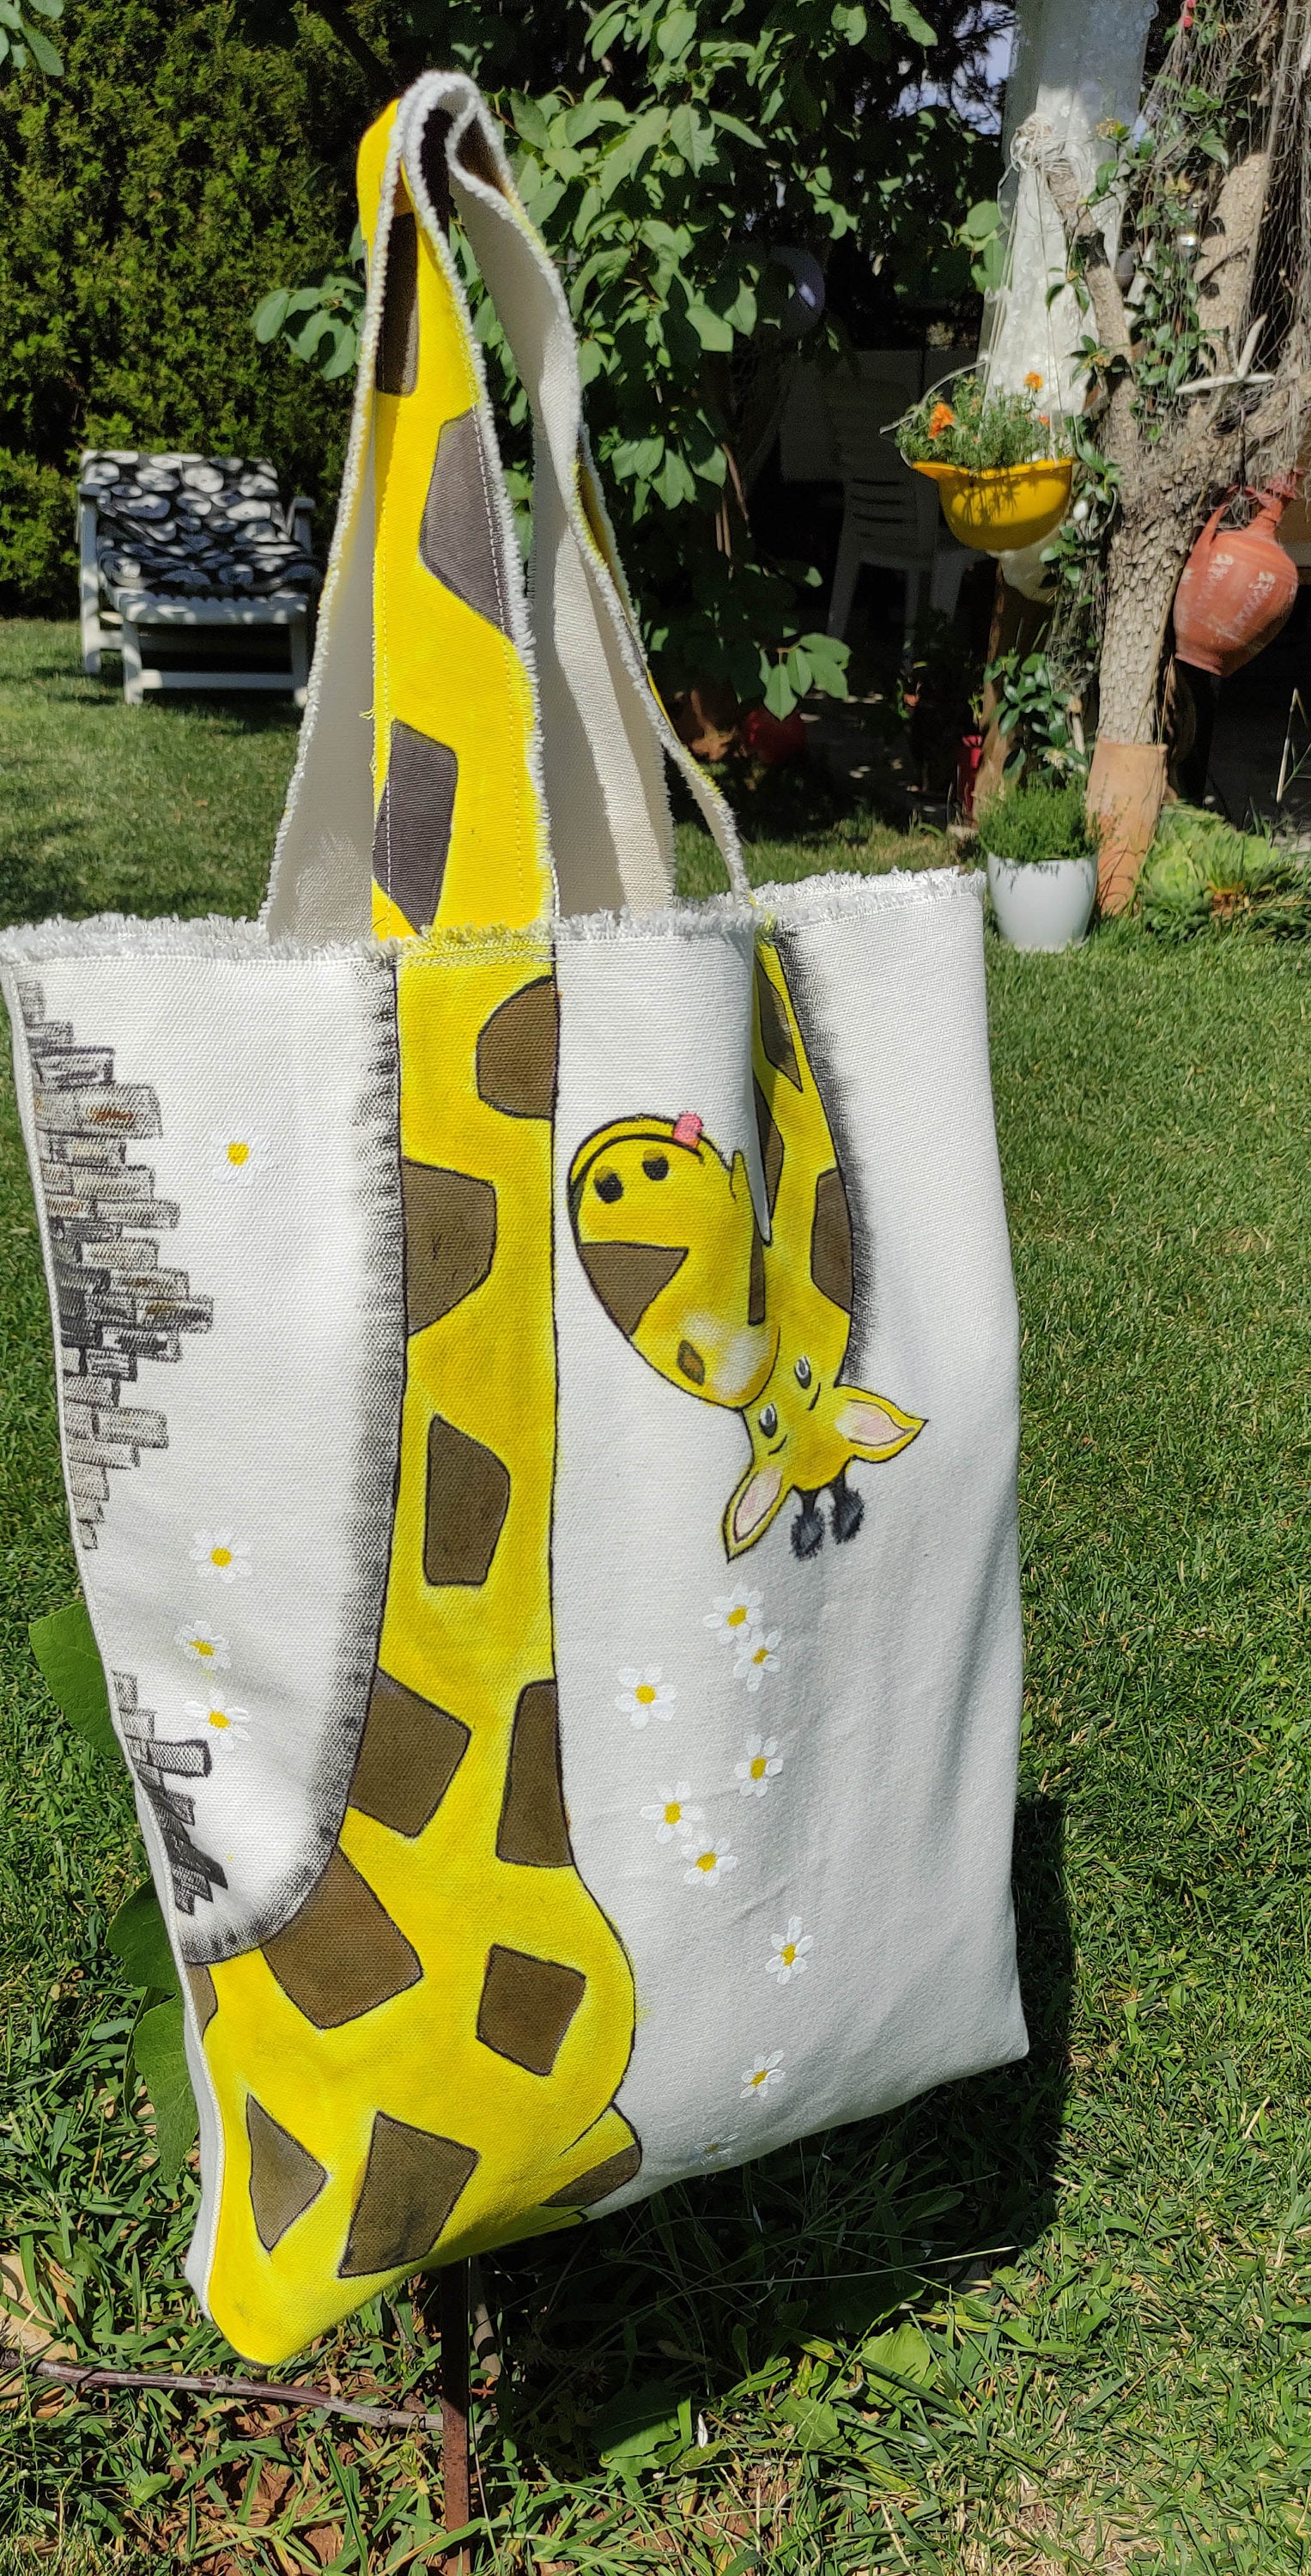 The Attico Friday Giraffe-print Tote Bag in Metallic